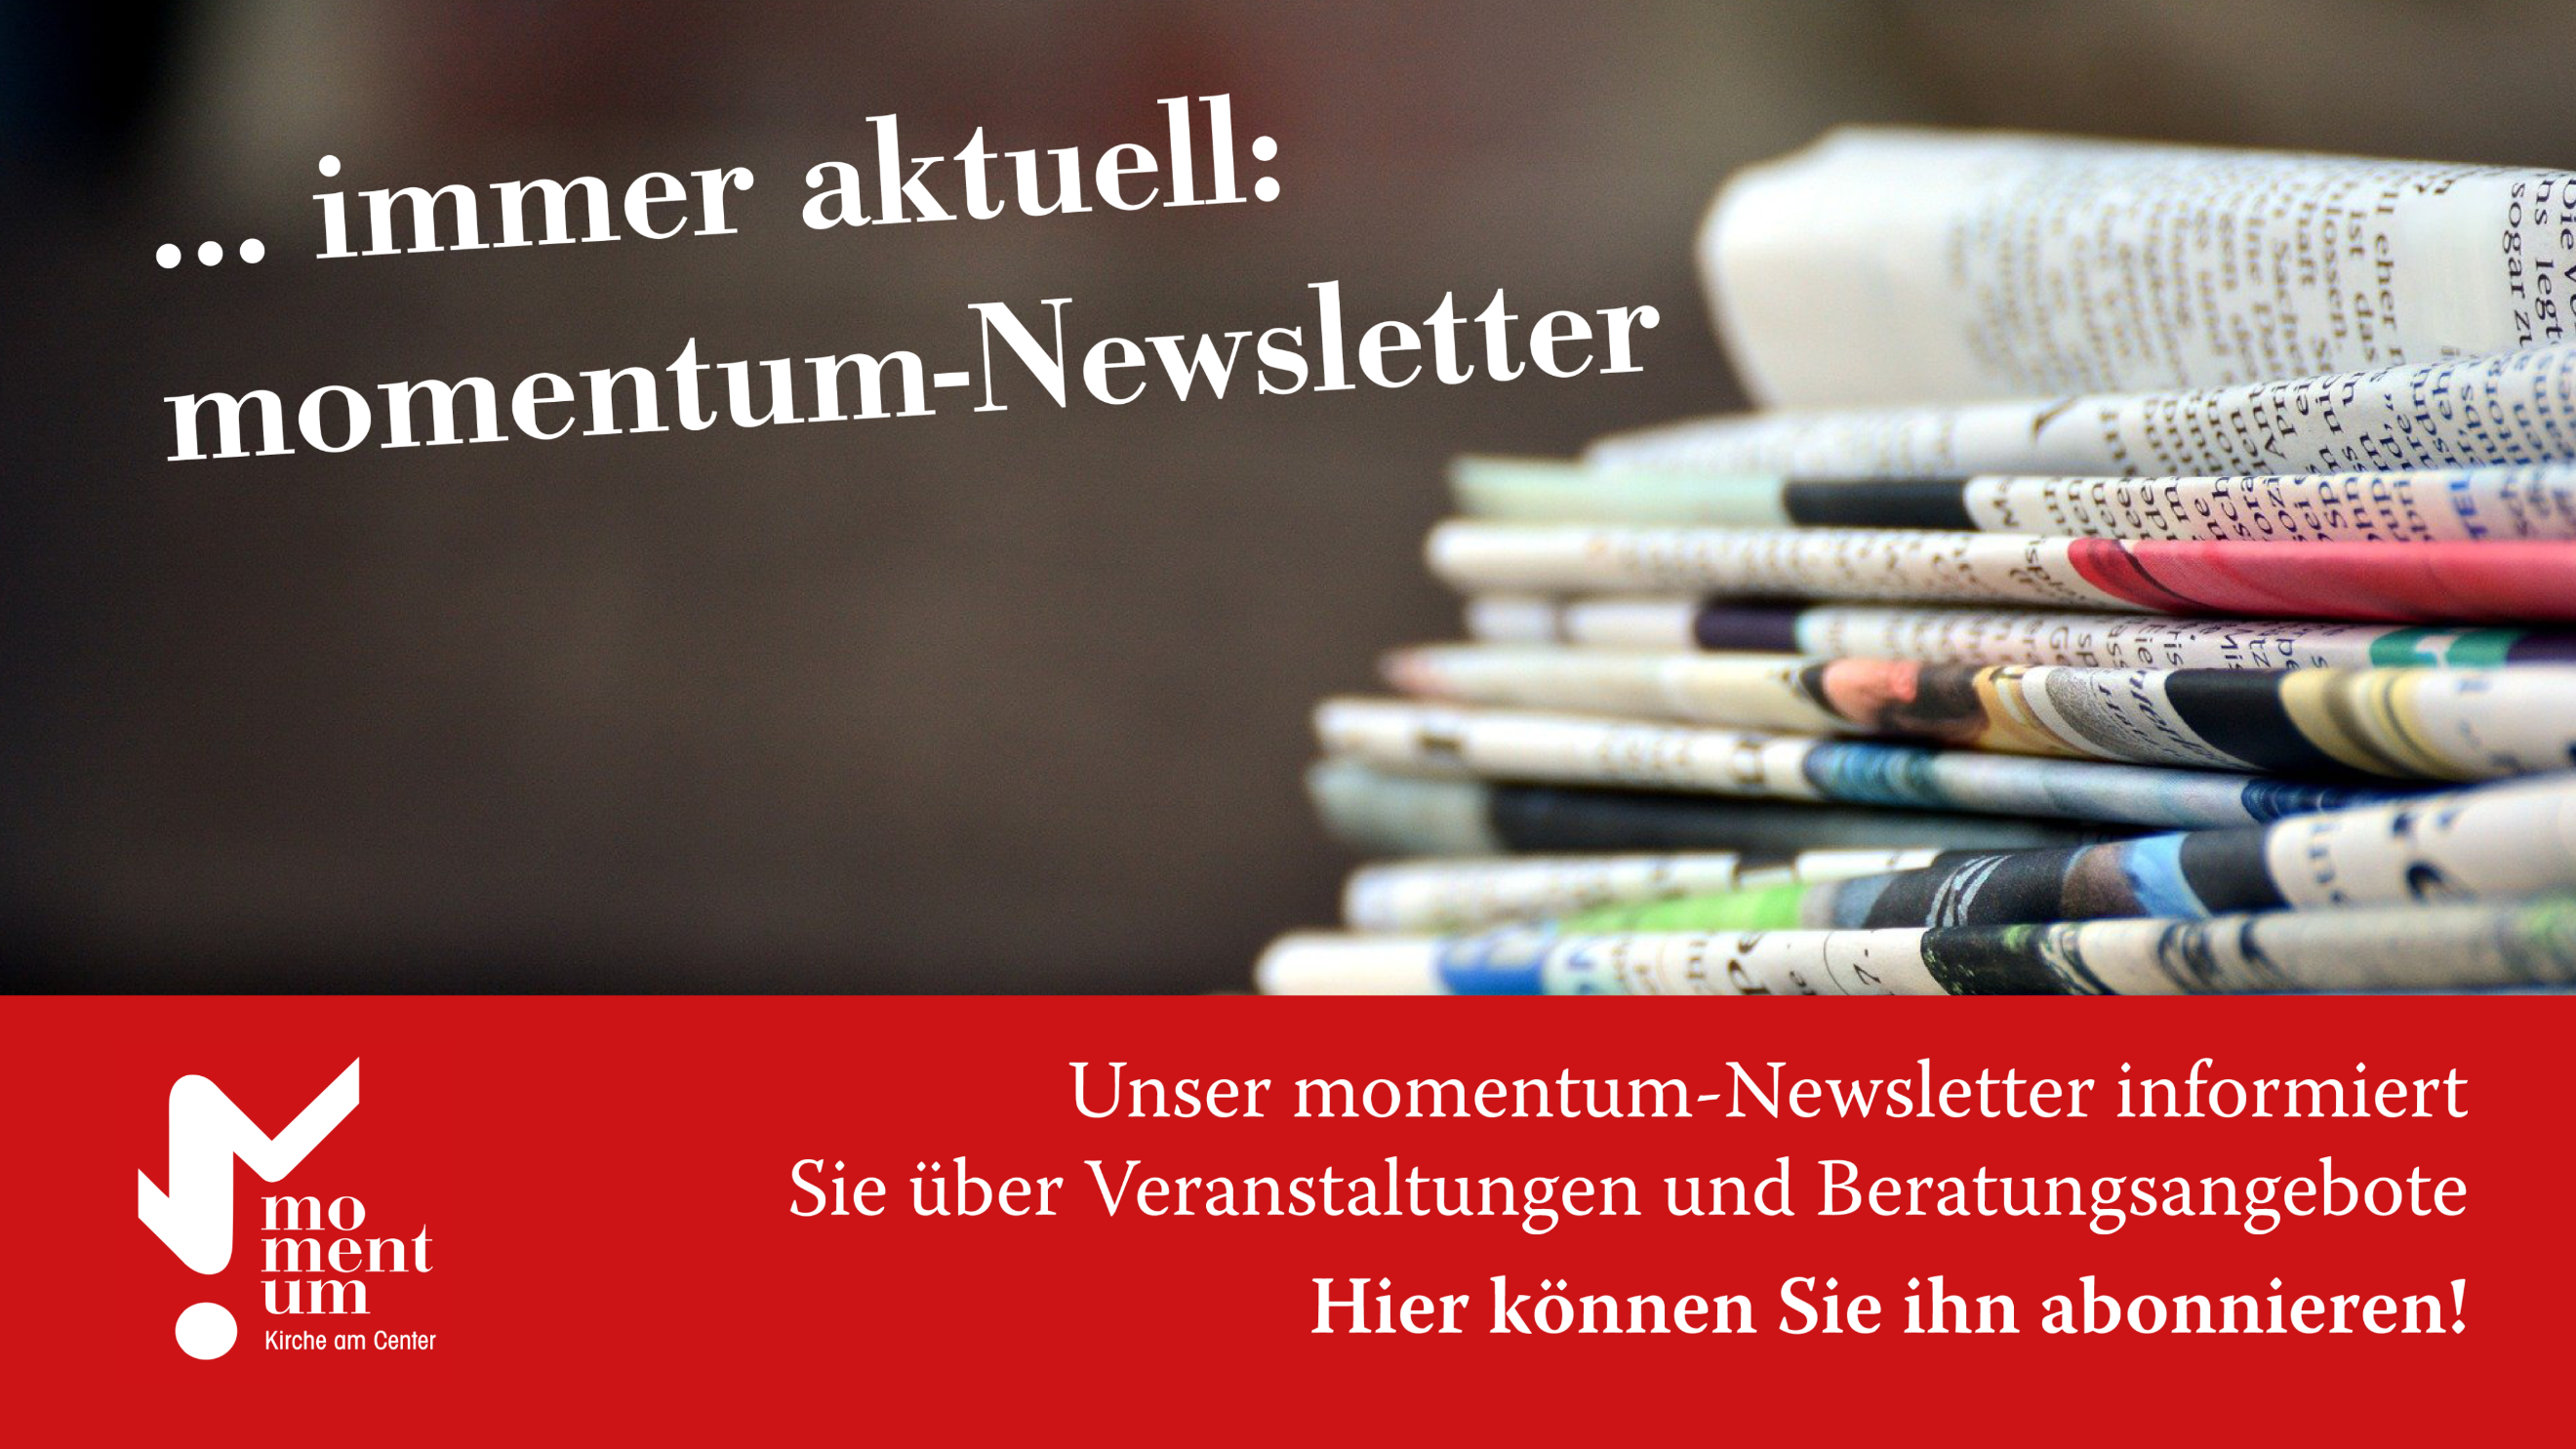 ... immer aktuell: momentum-Newsletter